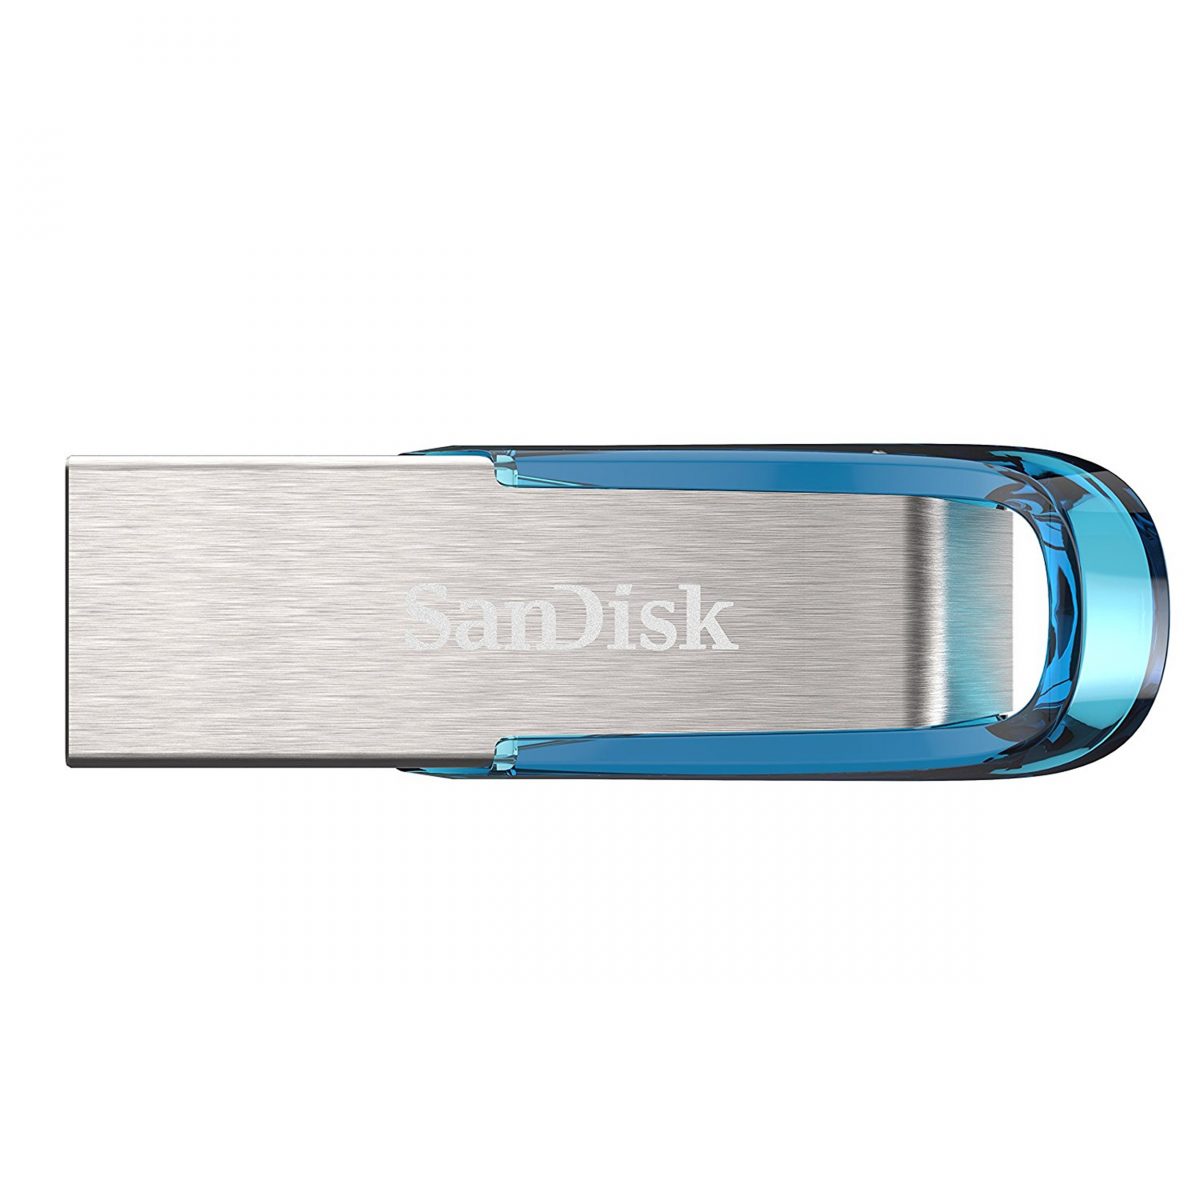 128 GB USB 3.0 SANDISK ULTRA FLAIR 150MB/S (SDCZ73-128G-G46B)